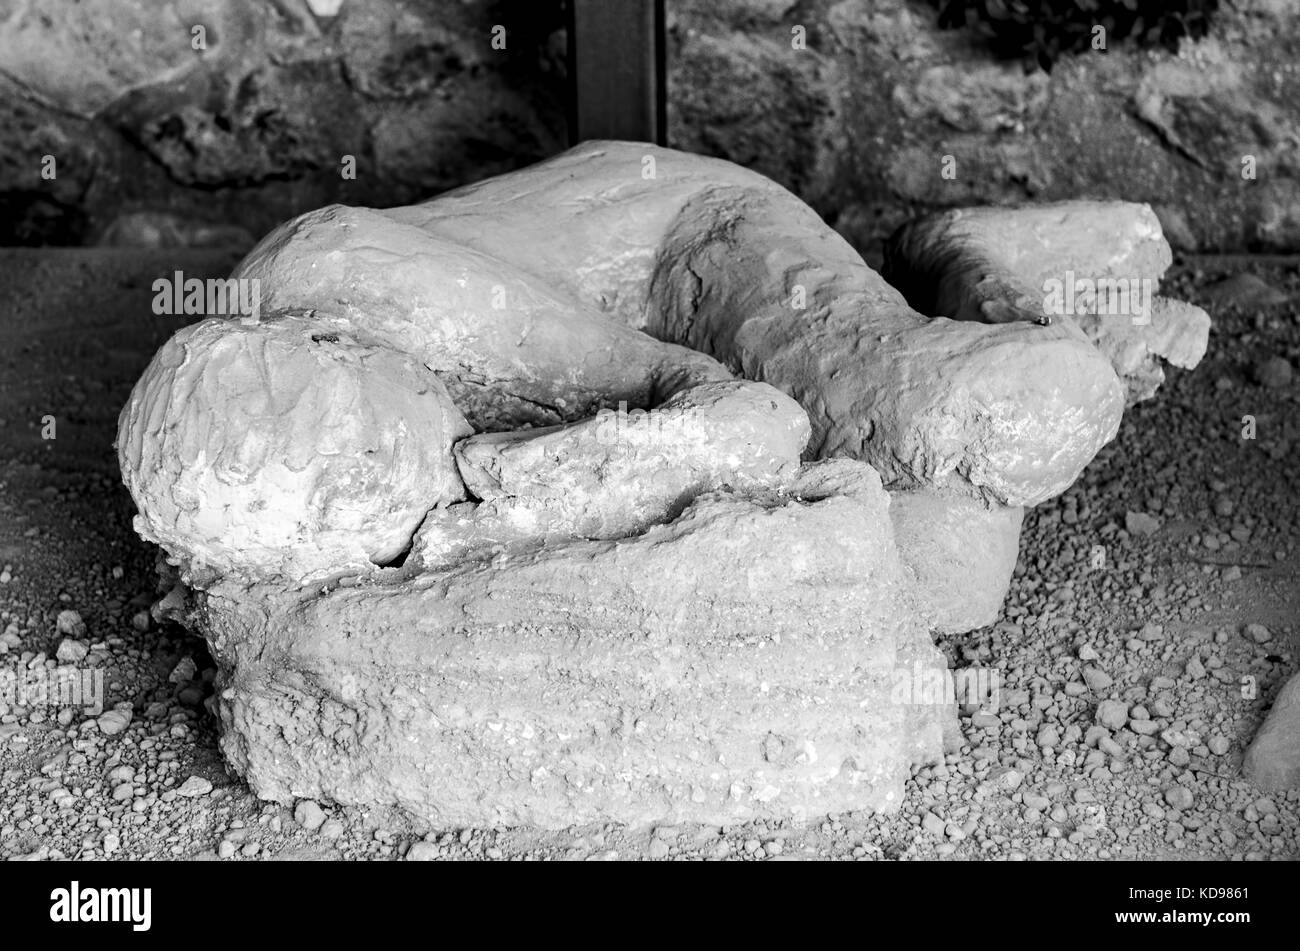 Victime à Pompéi de l'éruption du Vésuve Pompéi vesuviusAncient, une victime de l'éruption du Vésuve en 79 avant J.-C. dans l'époque romaine avec t Banque D'Images